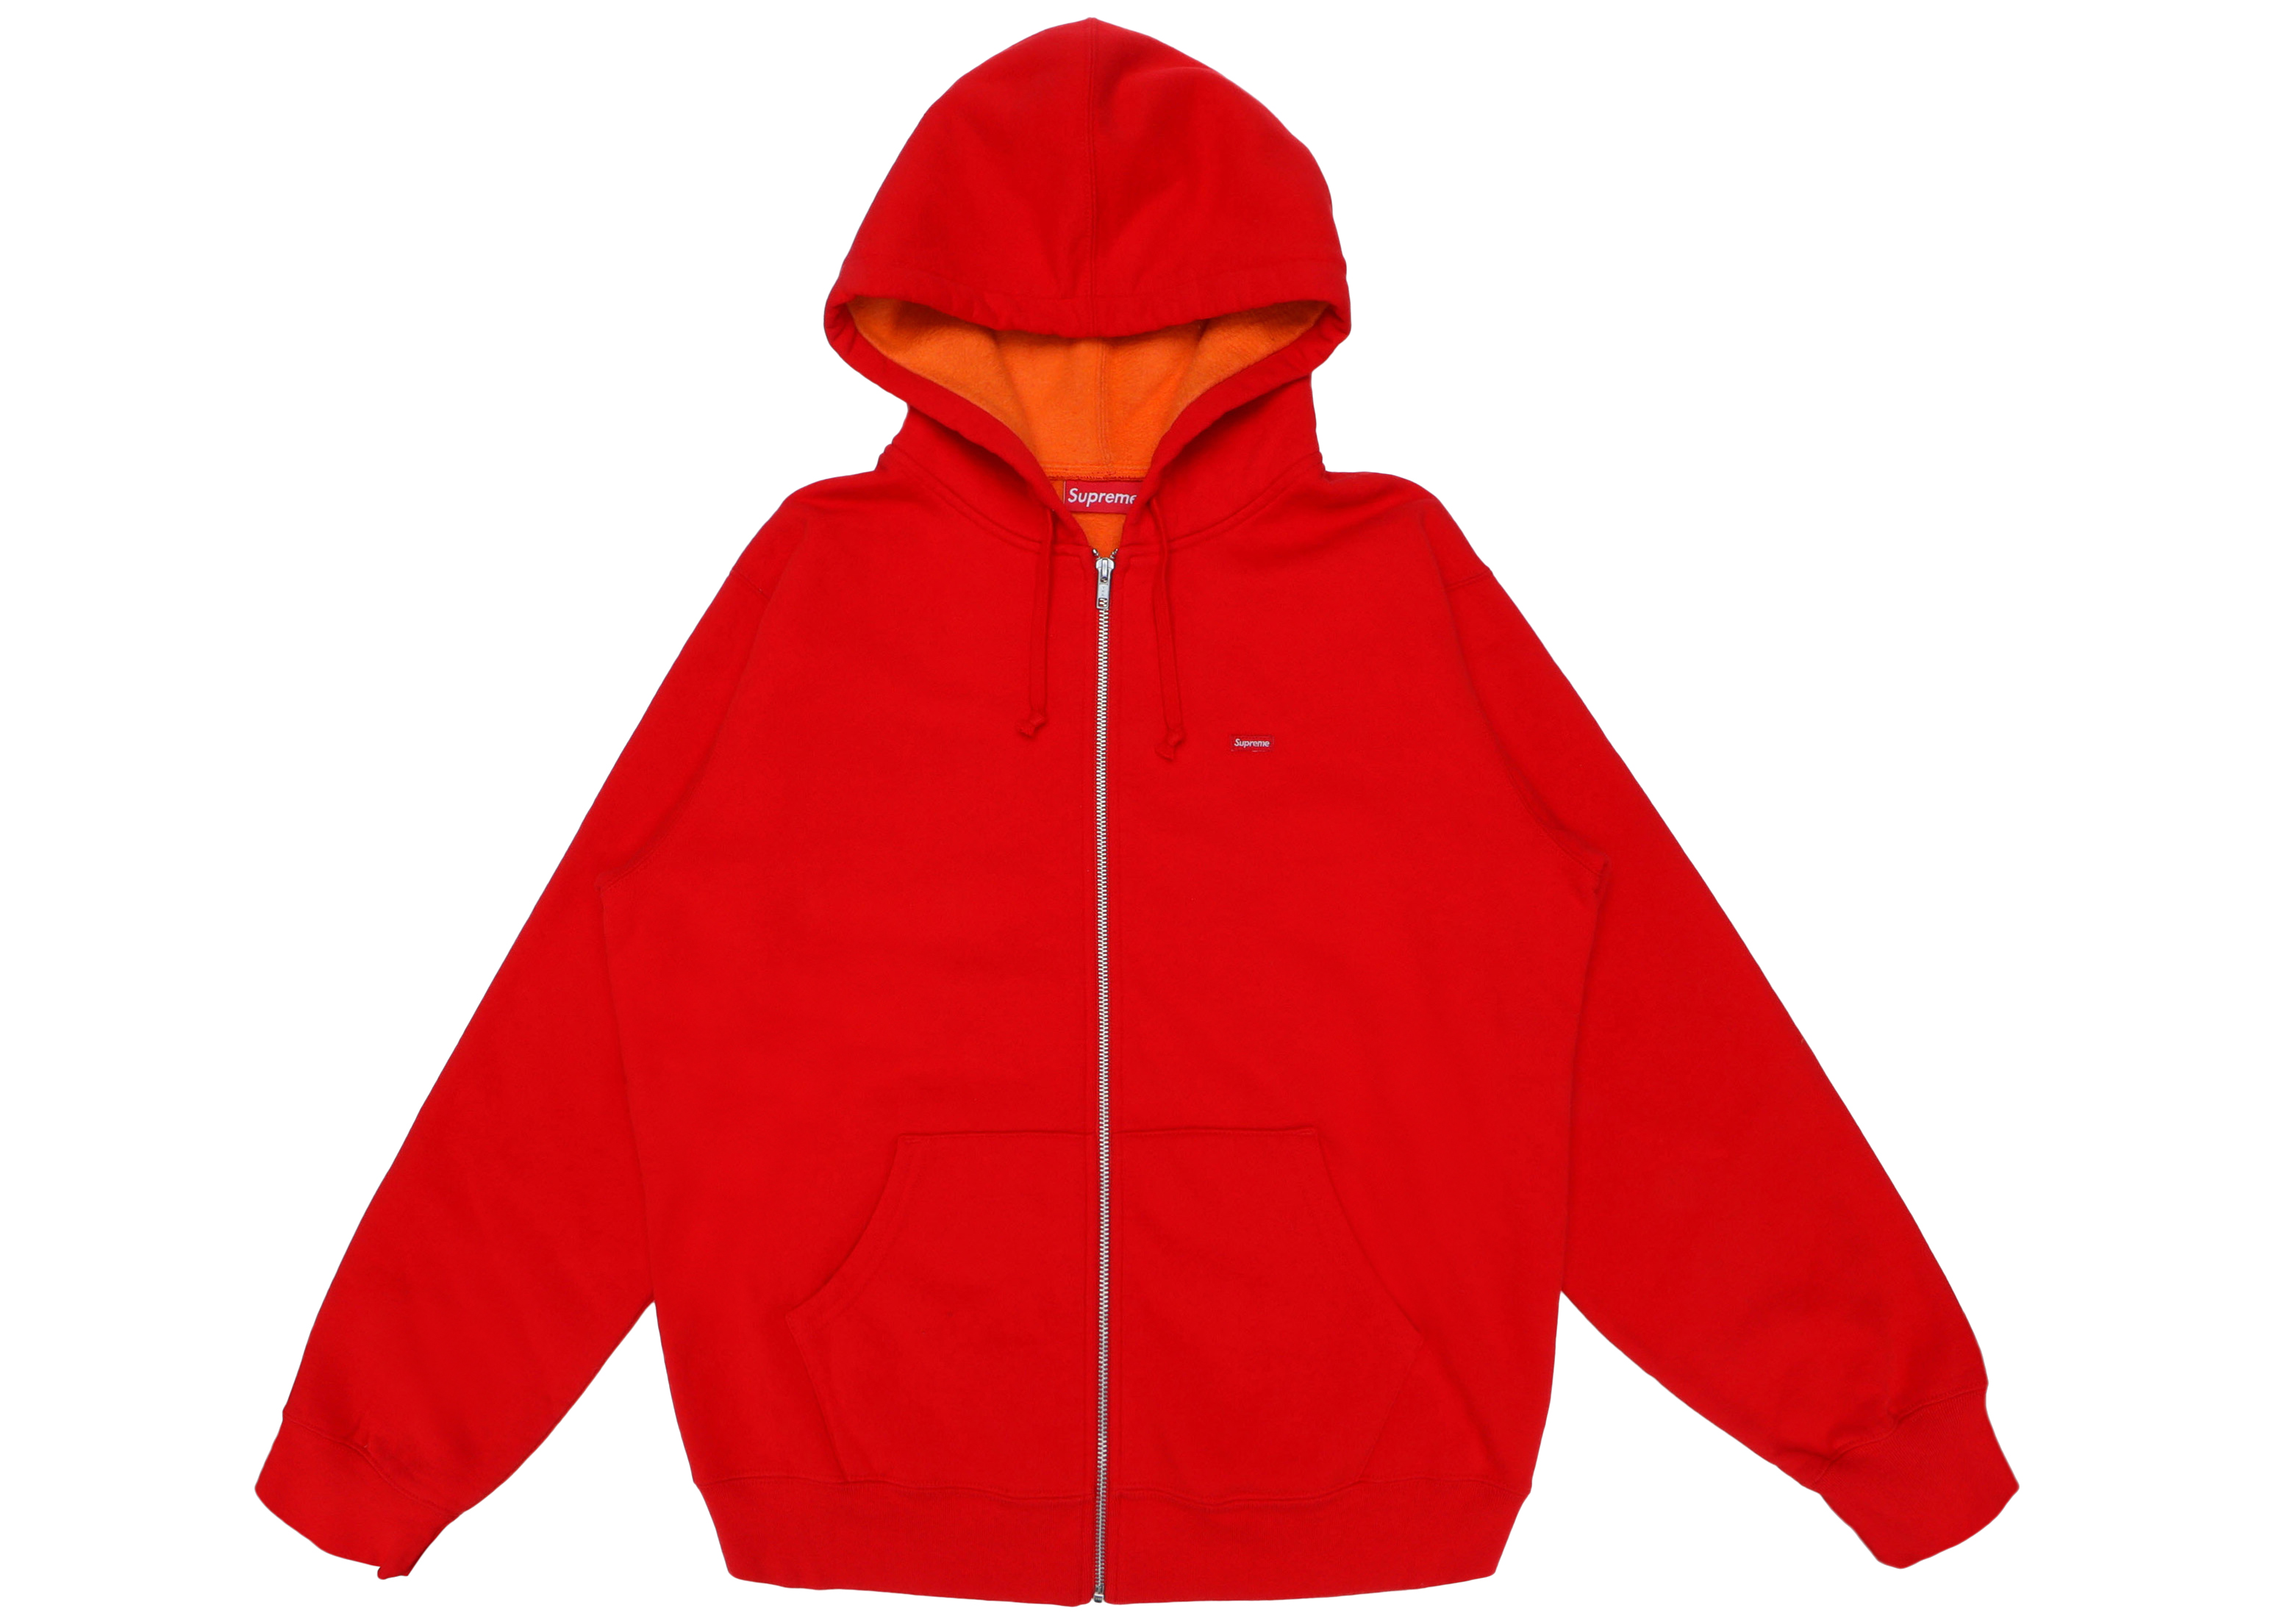 Supreme Contrast Zip Up Hooded Sweatshirt Red Men's - SS18 - US